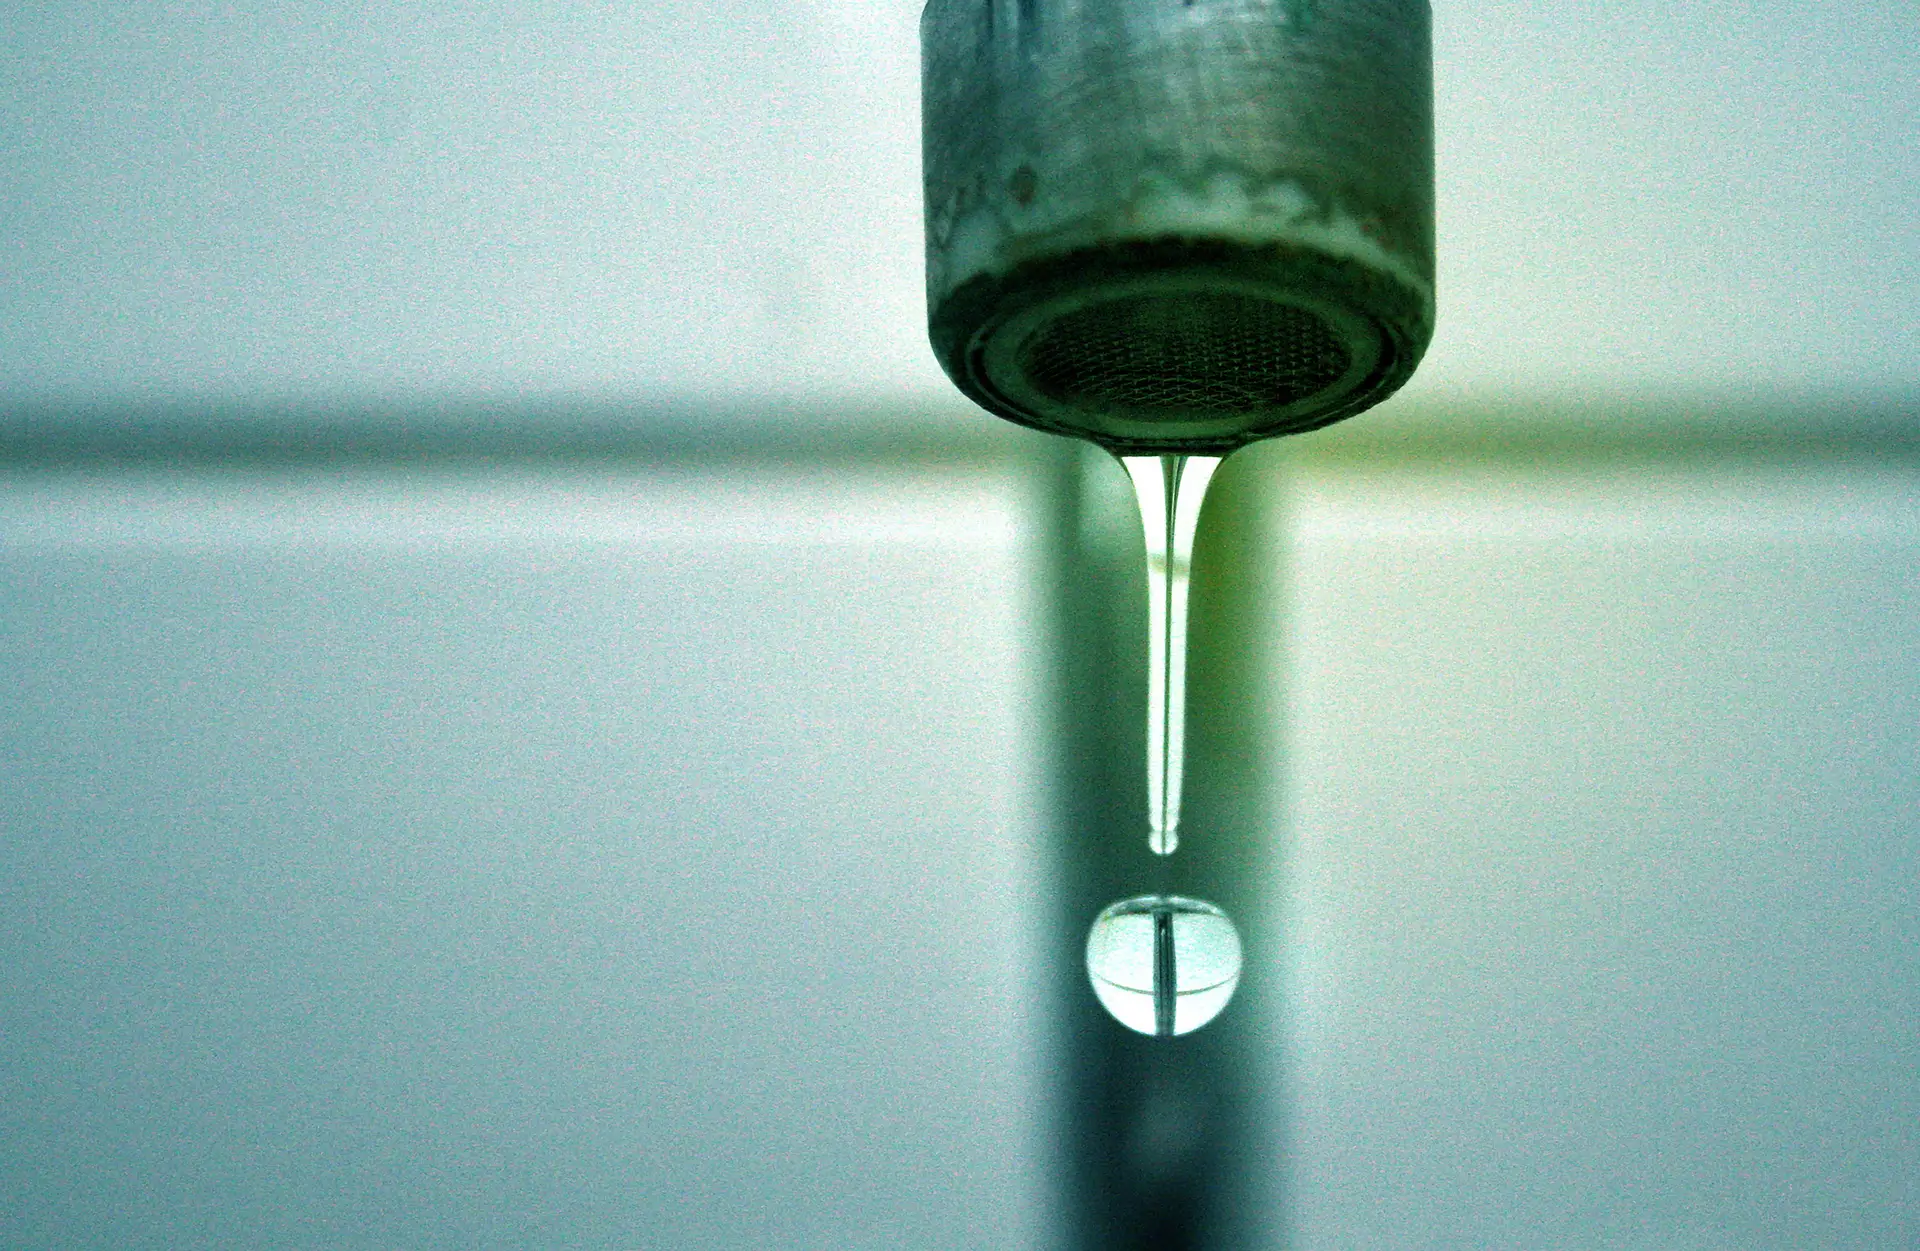 Água não faturada gera perda anual de 264 milhões de euros